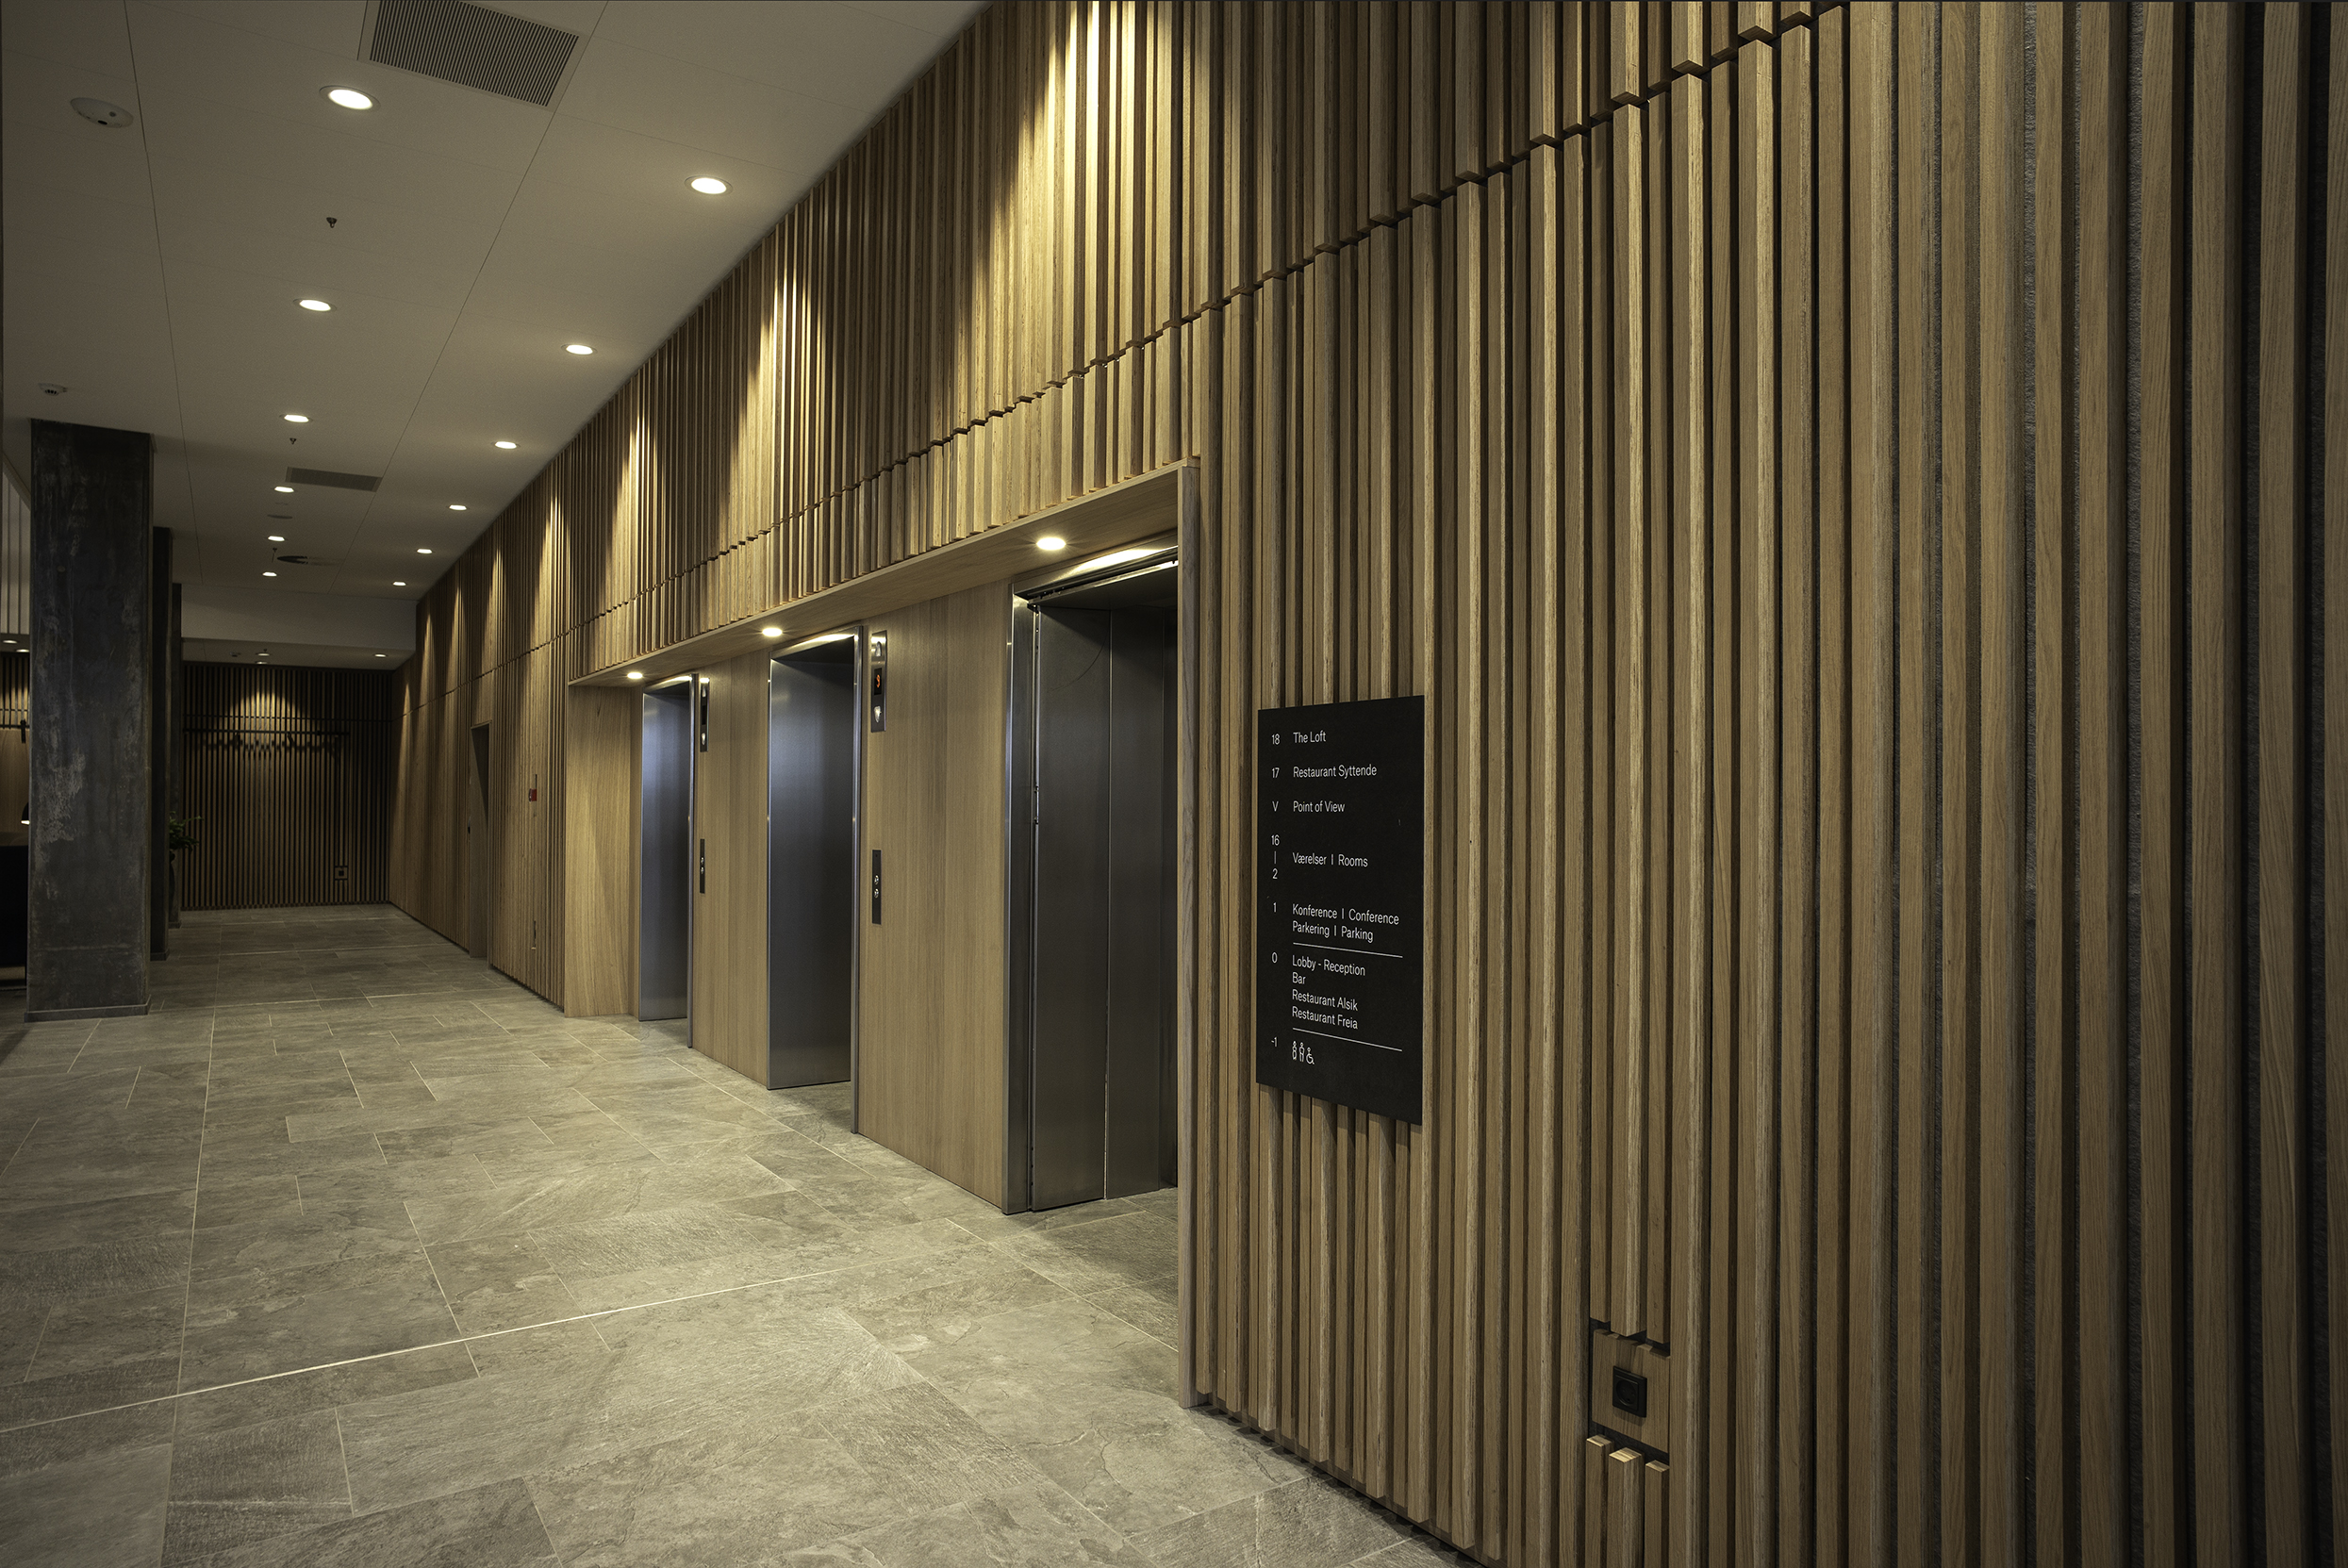 Hotelkorridor med trævæg og elevatorer